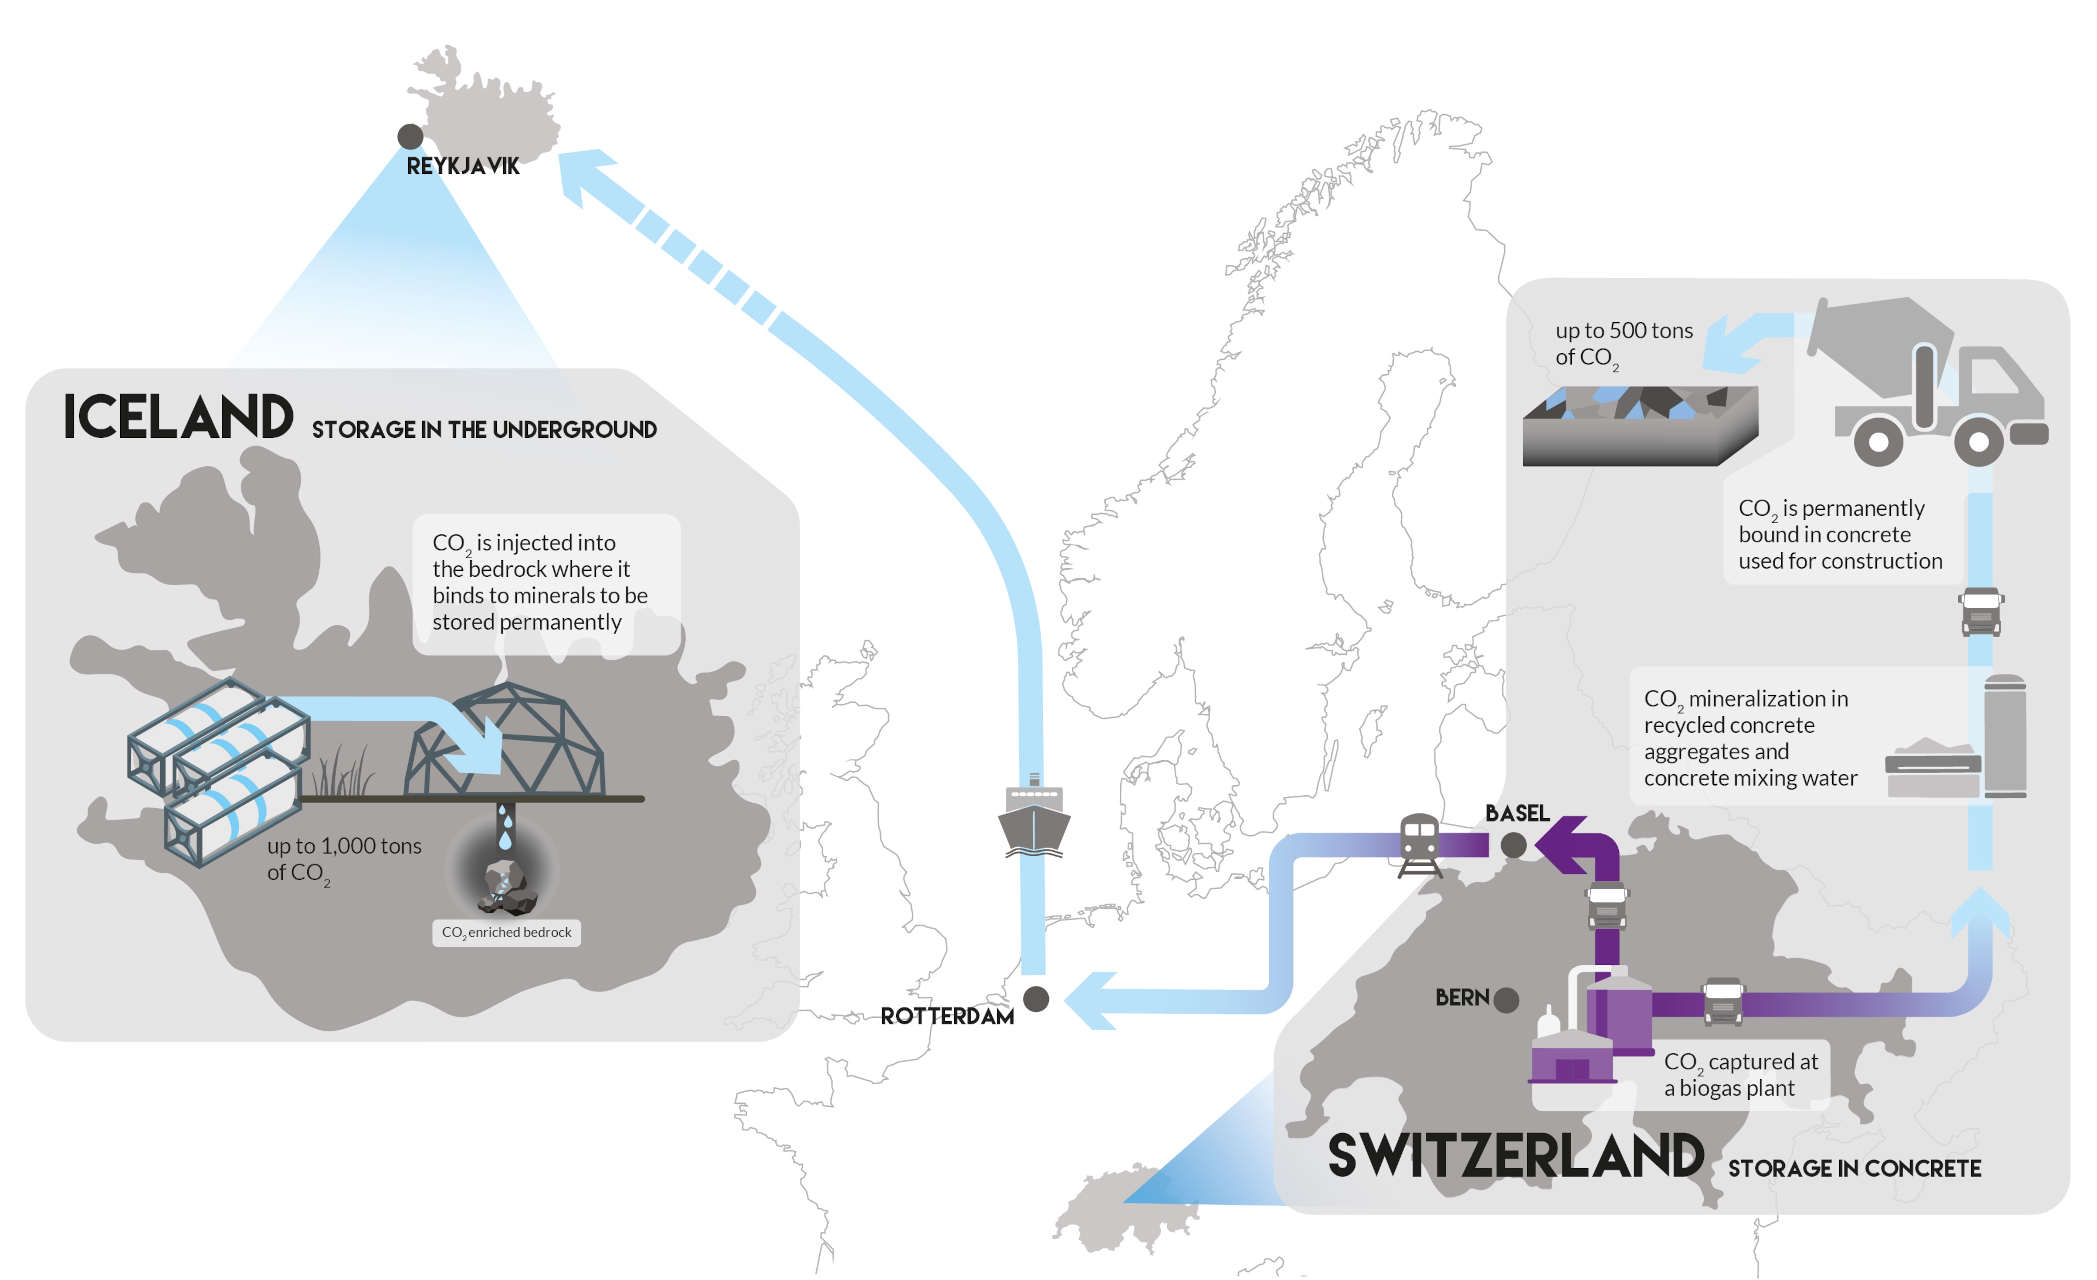 Cattura e stoccaggio di CO2, il progetto in Svizzera